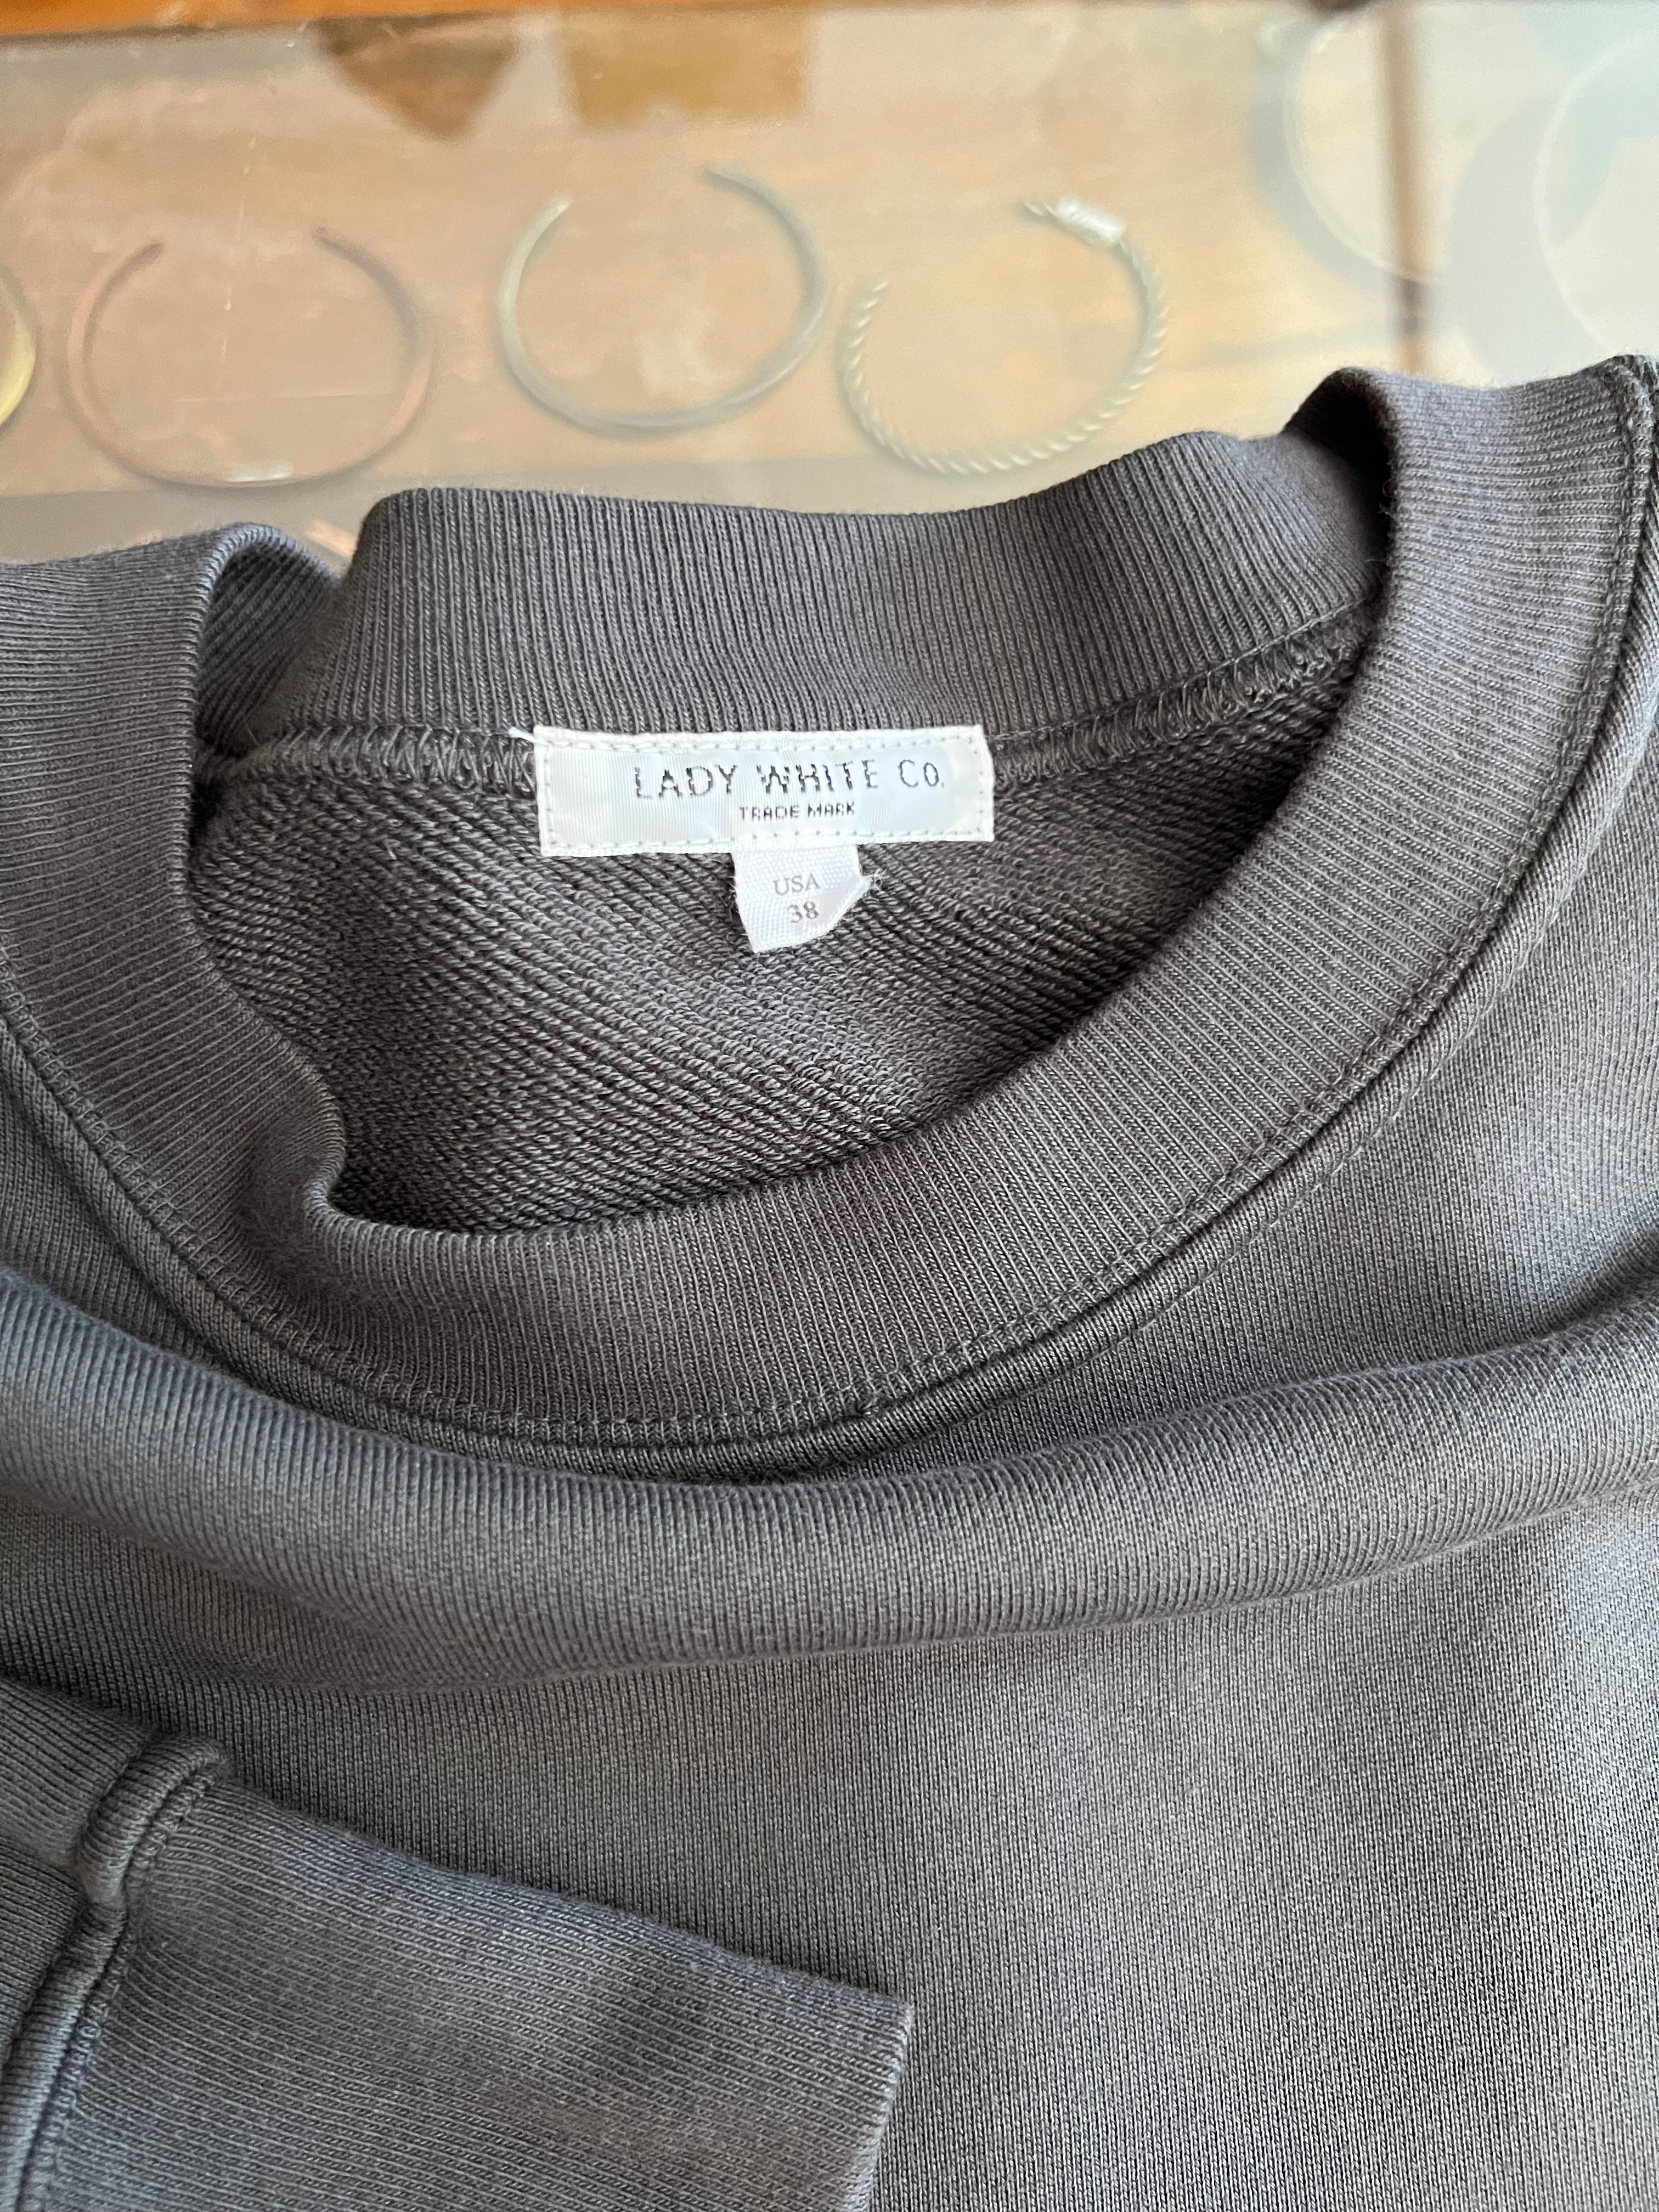 Gently Used Lady White Co. Relaxed Sweatshirt - 38/Medium - 